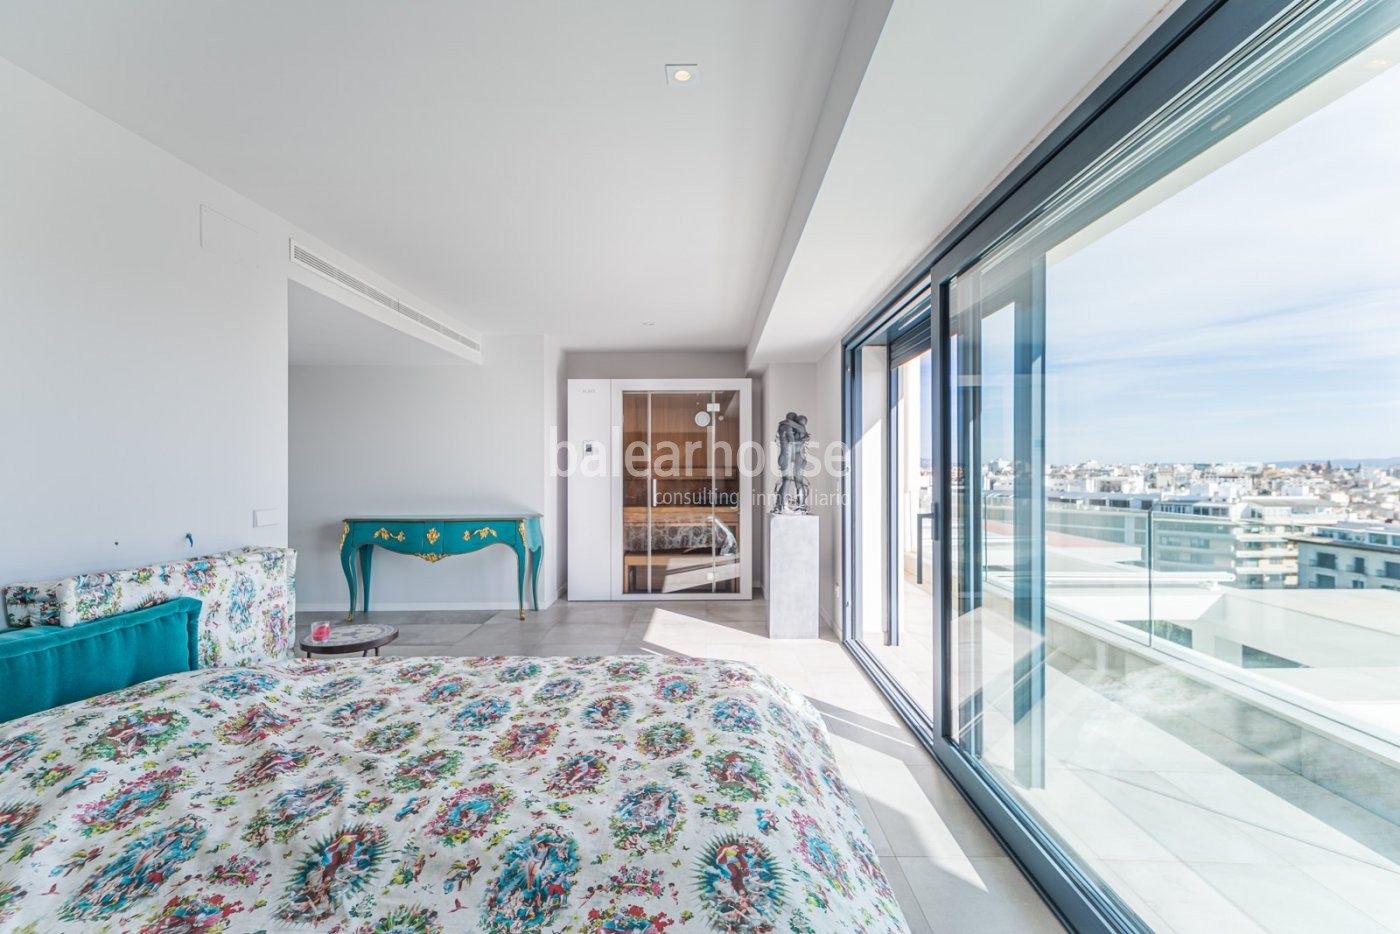 Spektakuläres Designer-Penthouse im Zentrum von Palma mit großen Terrassen und schöner Aussicht.